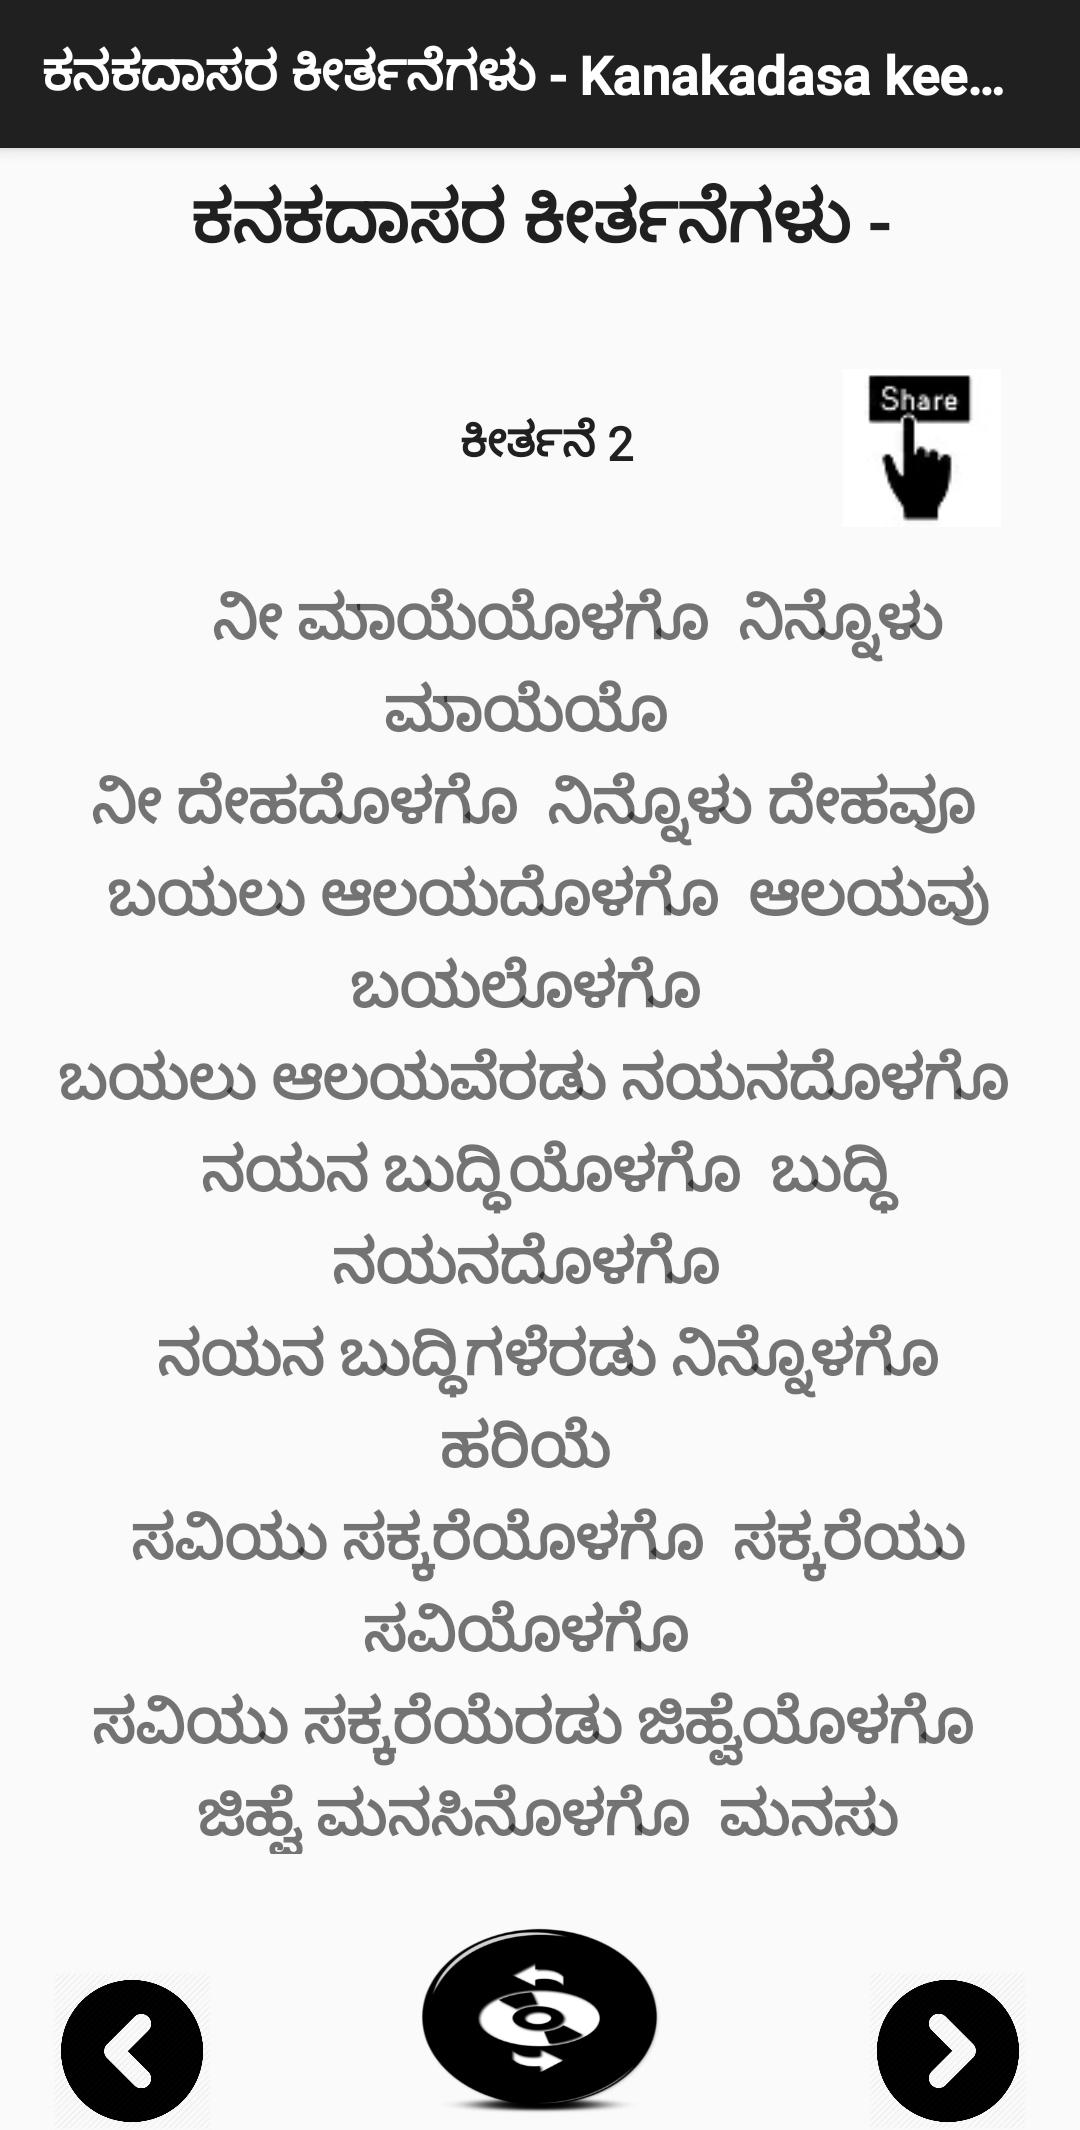 ಕನಕದಾಸರ ಕೀರ್ತನೆಗಳು - Kanakadasa Keerthane songs 3.0 Screenshot 2